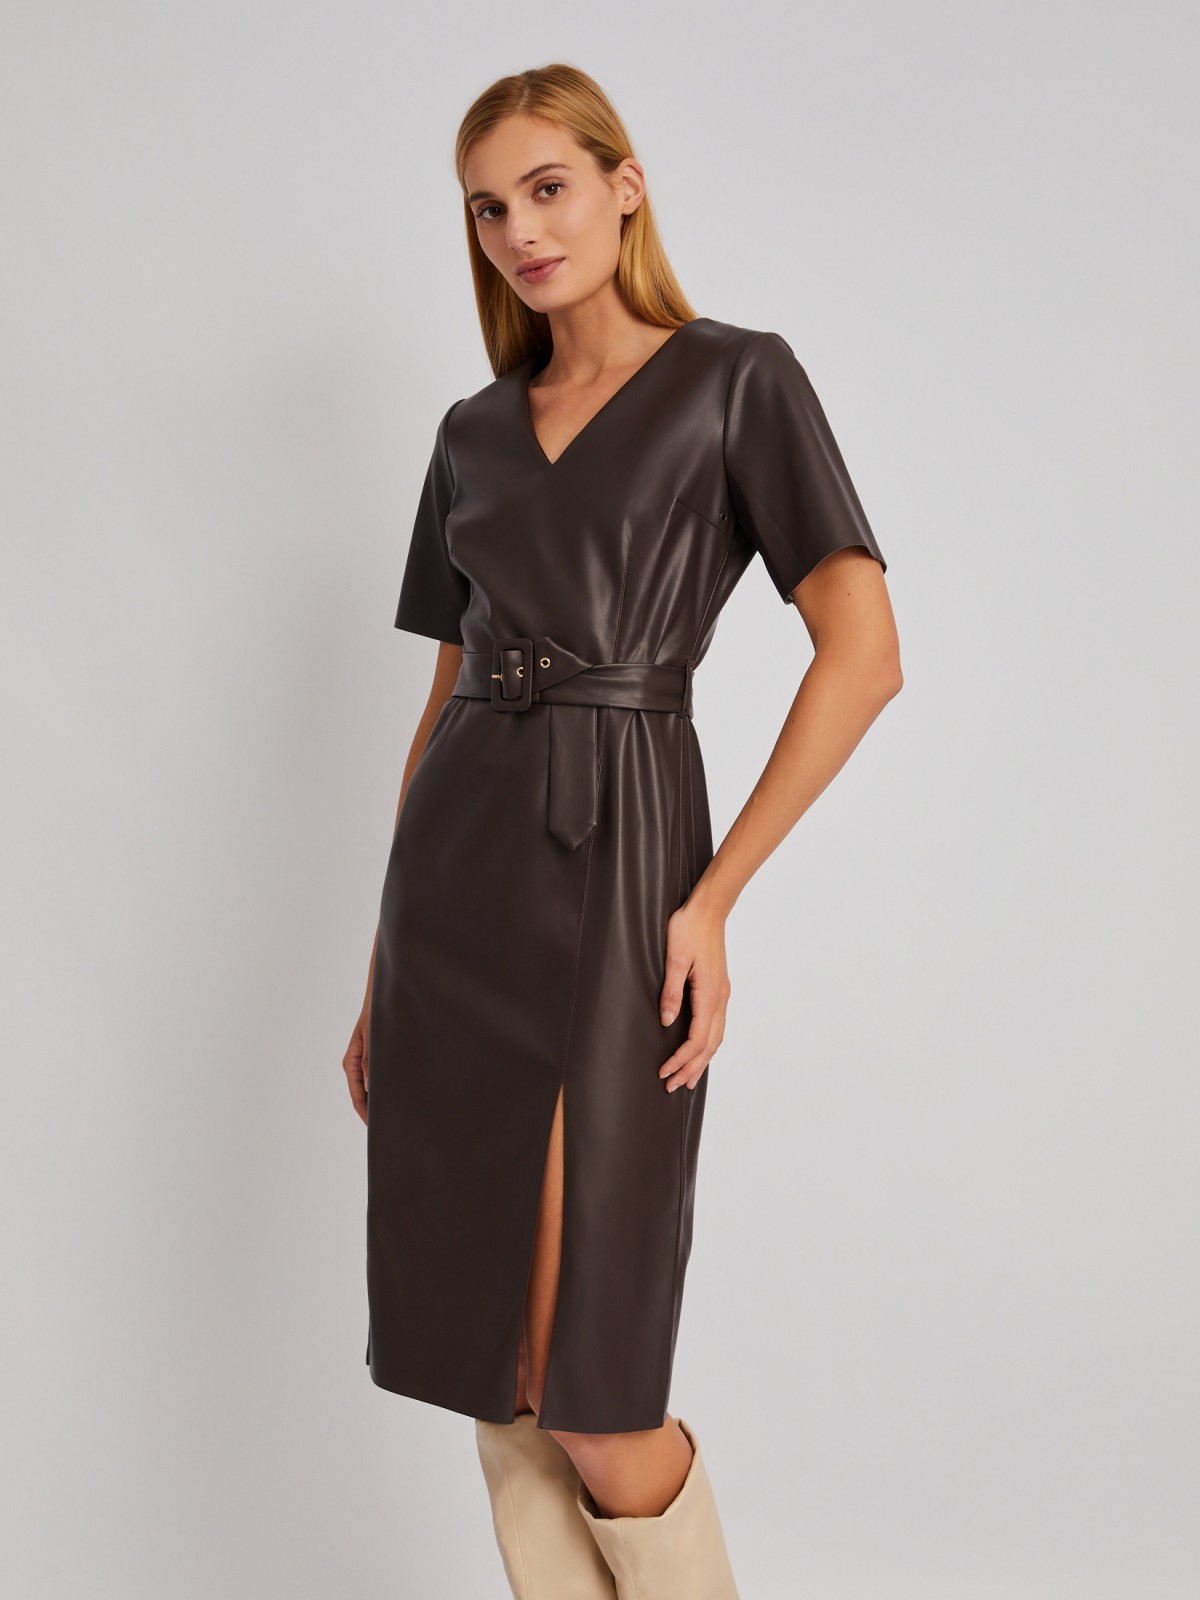 Платье из экокожи с разрезом на подоле и ремнём zolla 024118259213, цвет коричневый, размер S